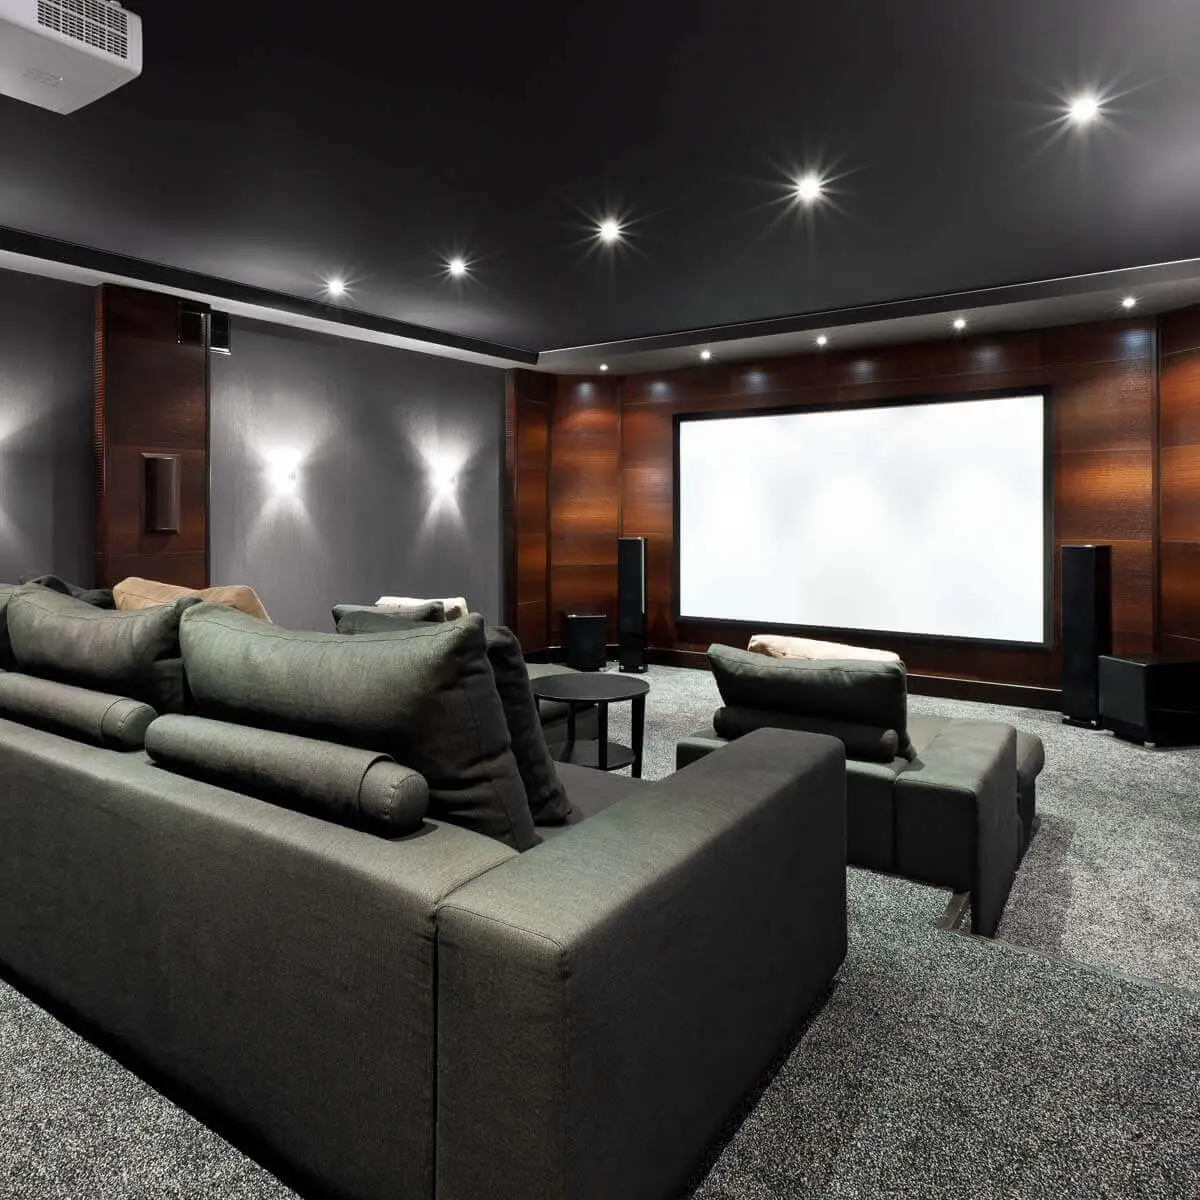 lighting ideas basement home theater